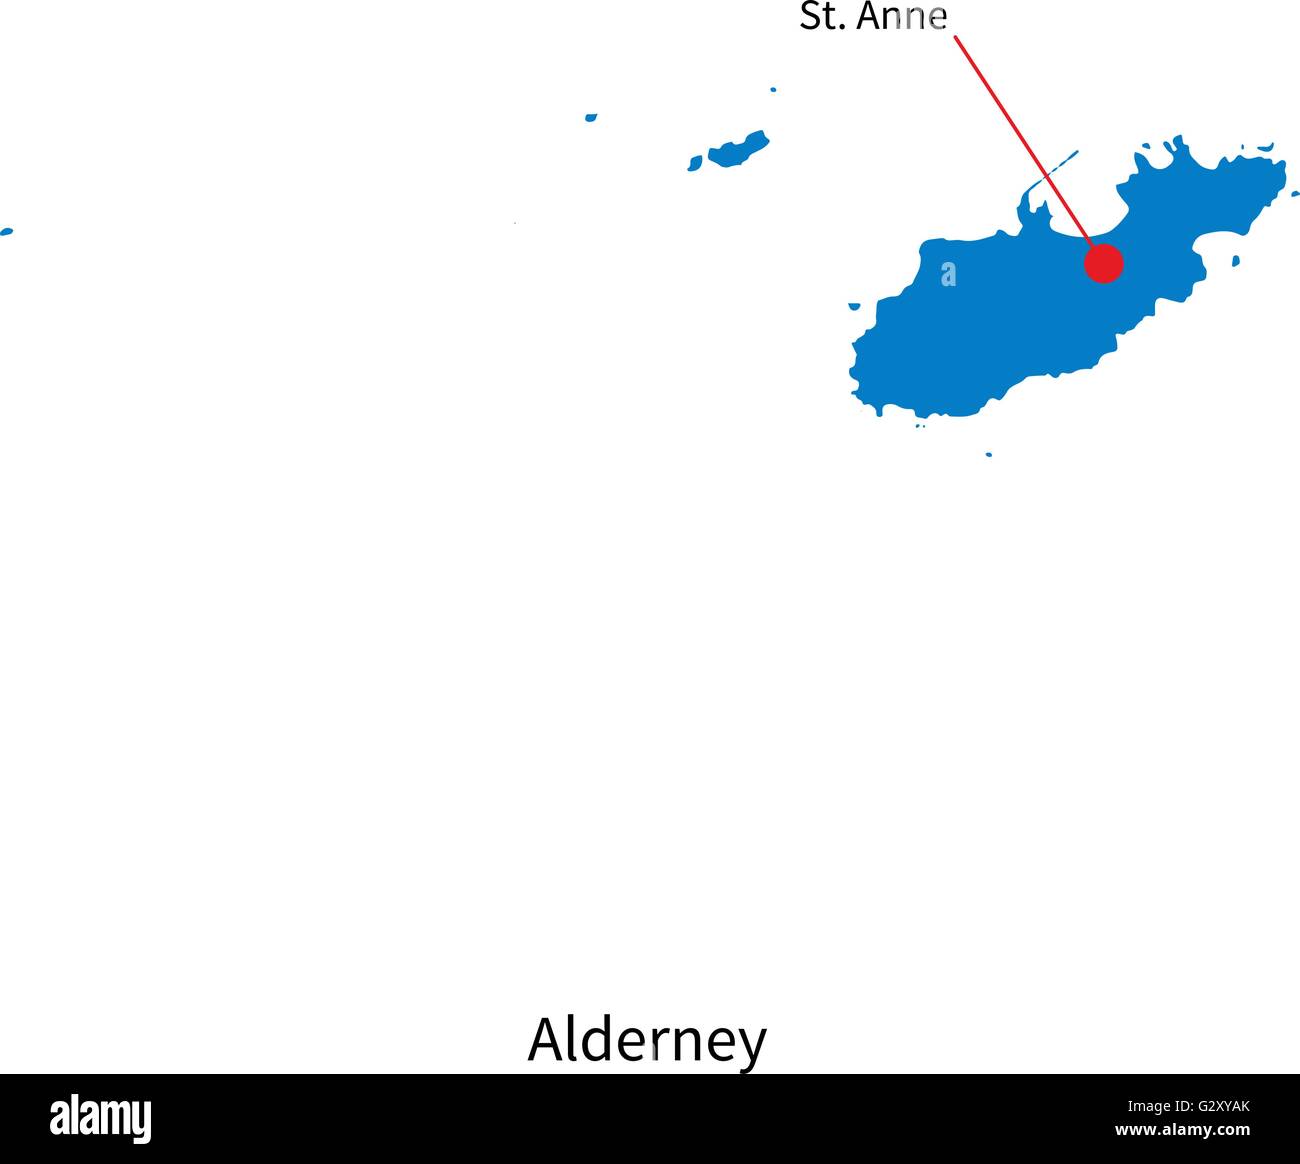 Dettaglio mappa vettoriale di Alderney e città capitale St. Anne Illustrazione Vettoriale